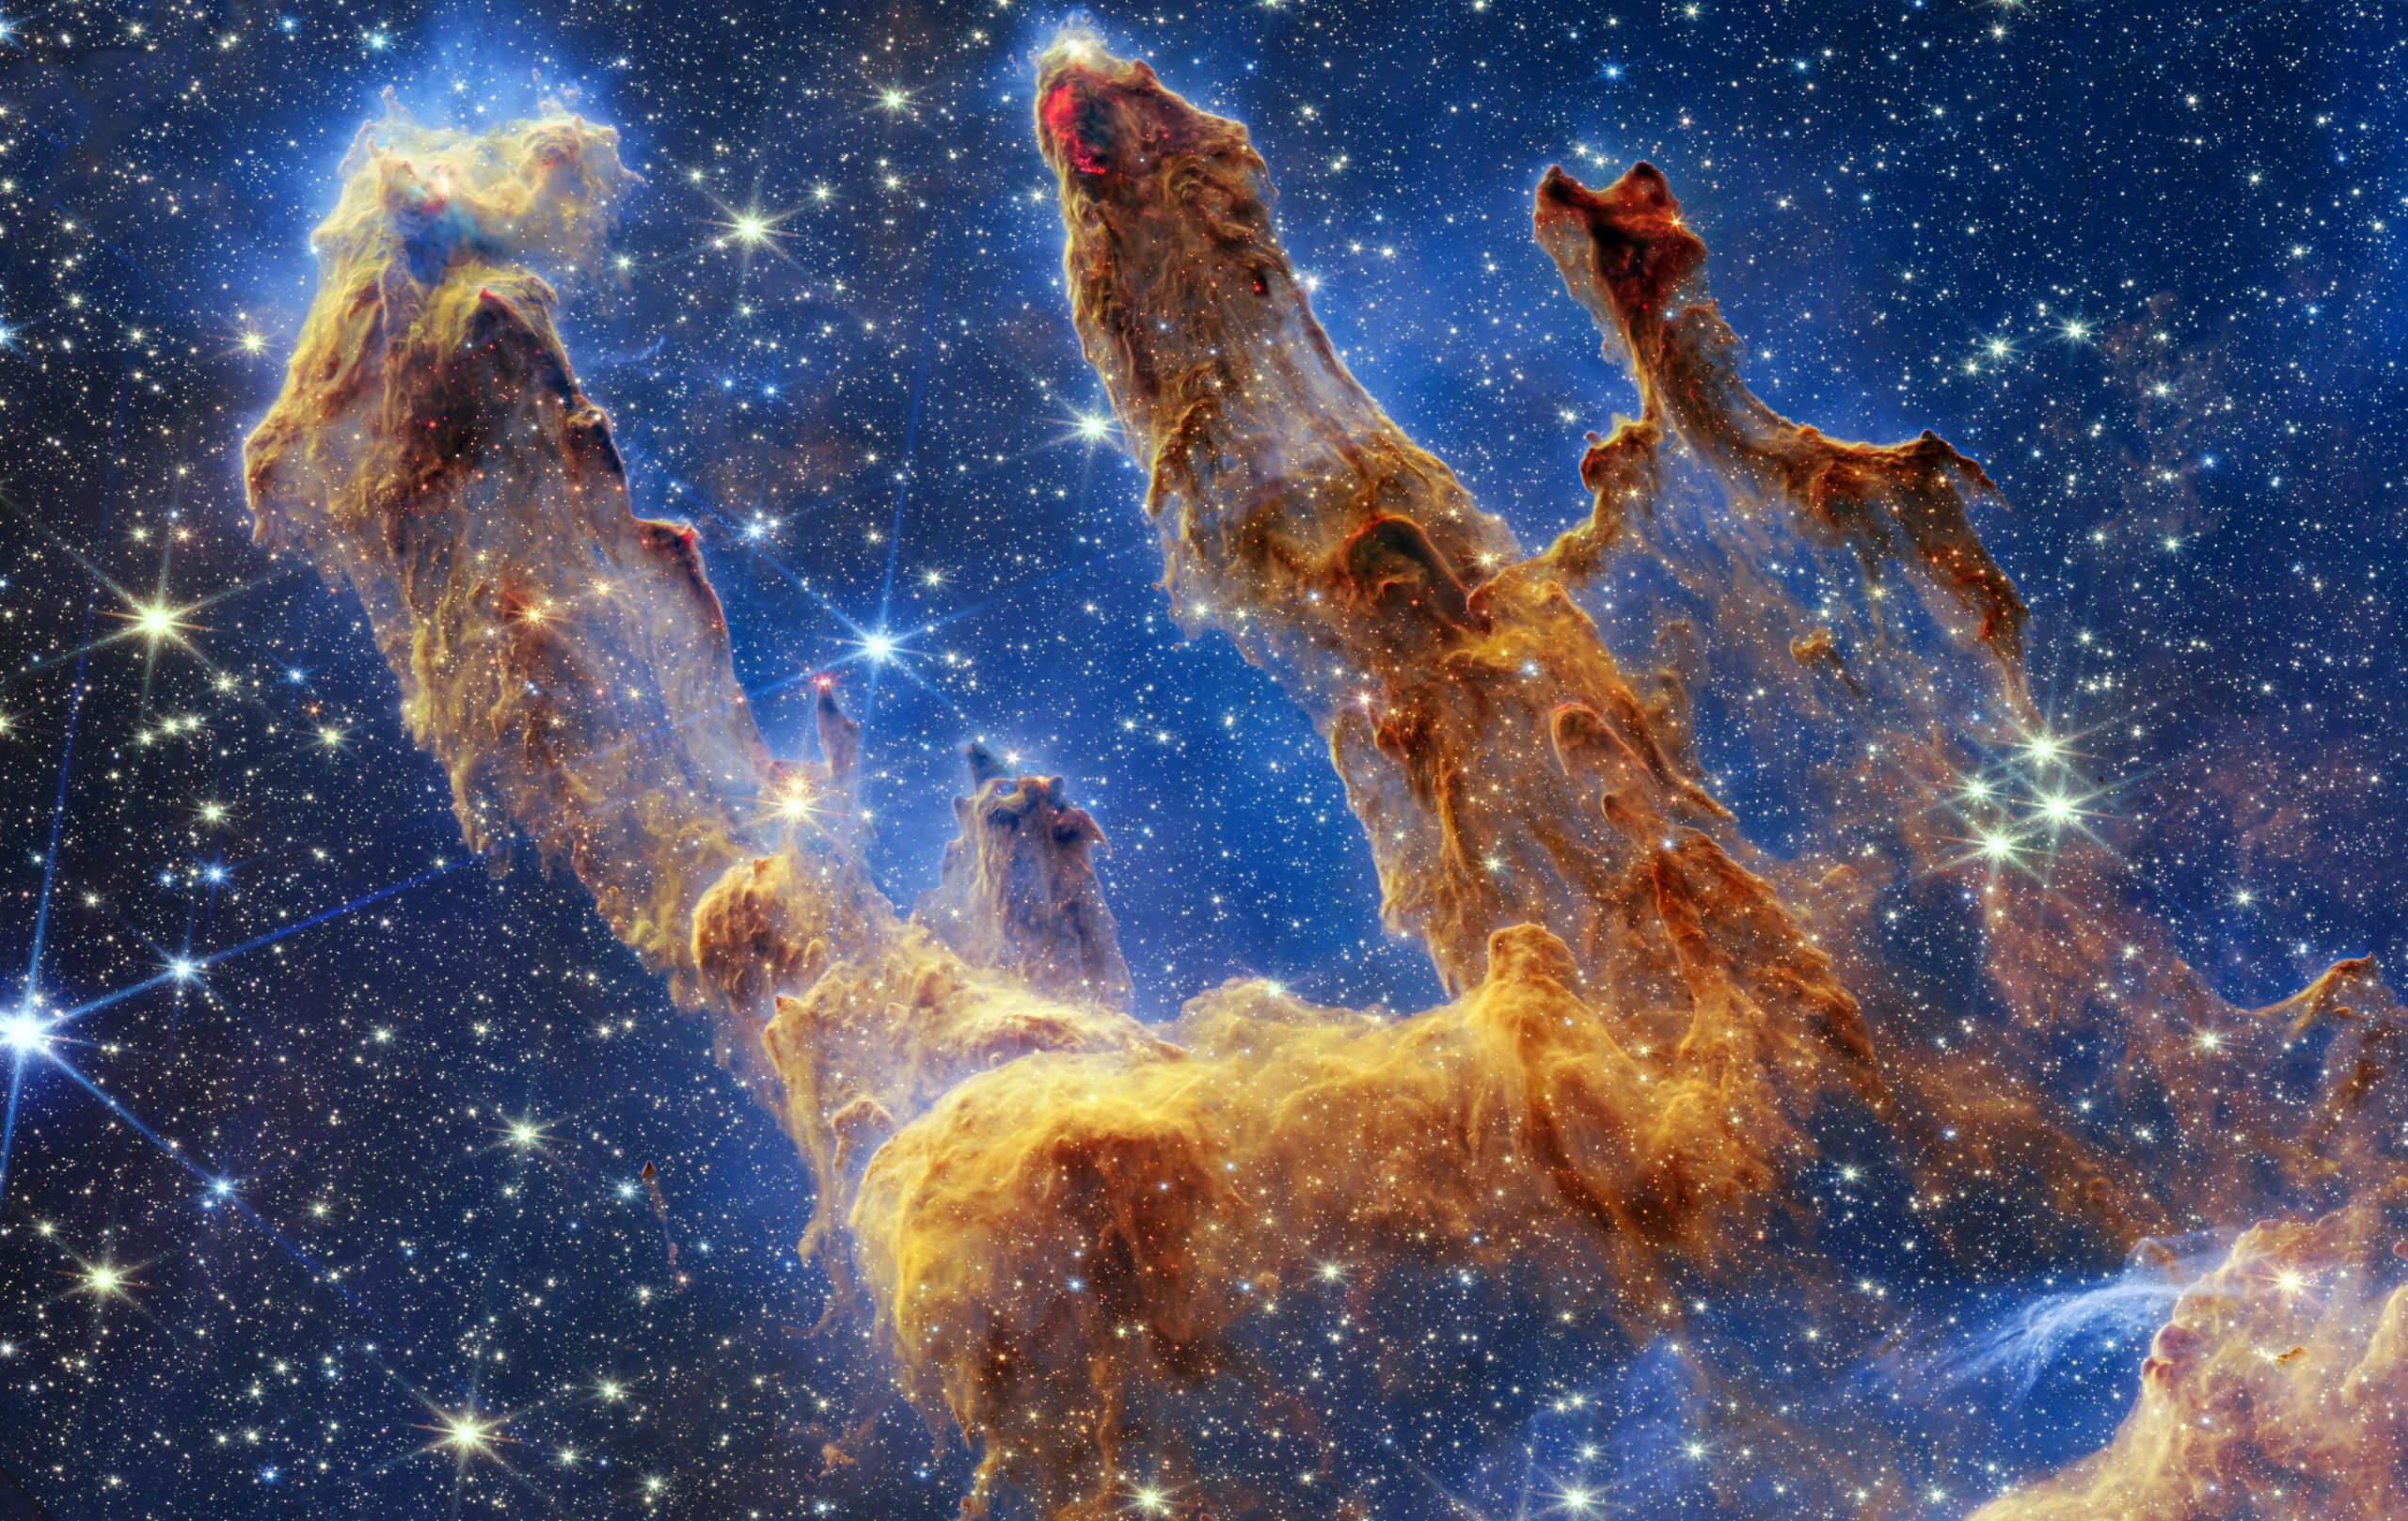 Webbův vesmírný dalekohled pořizuje neuvěřitelný snímek Pilířů stvoření plný hvězd